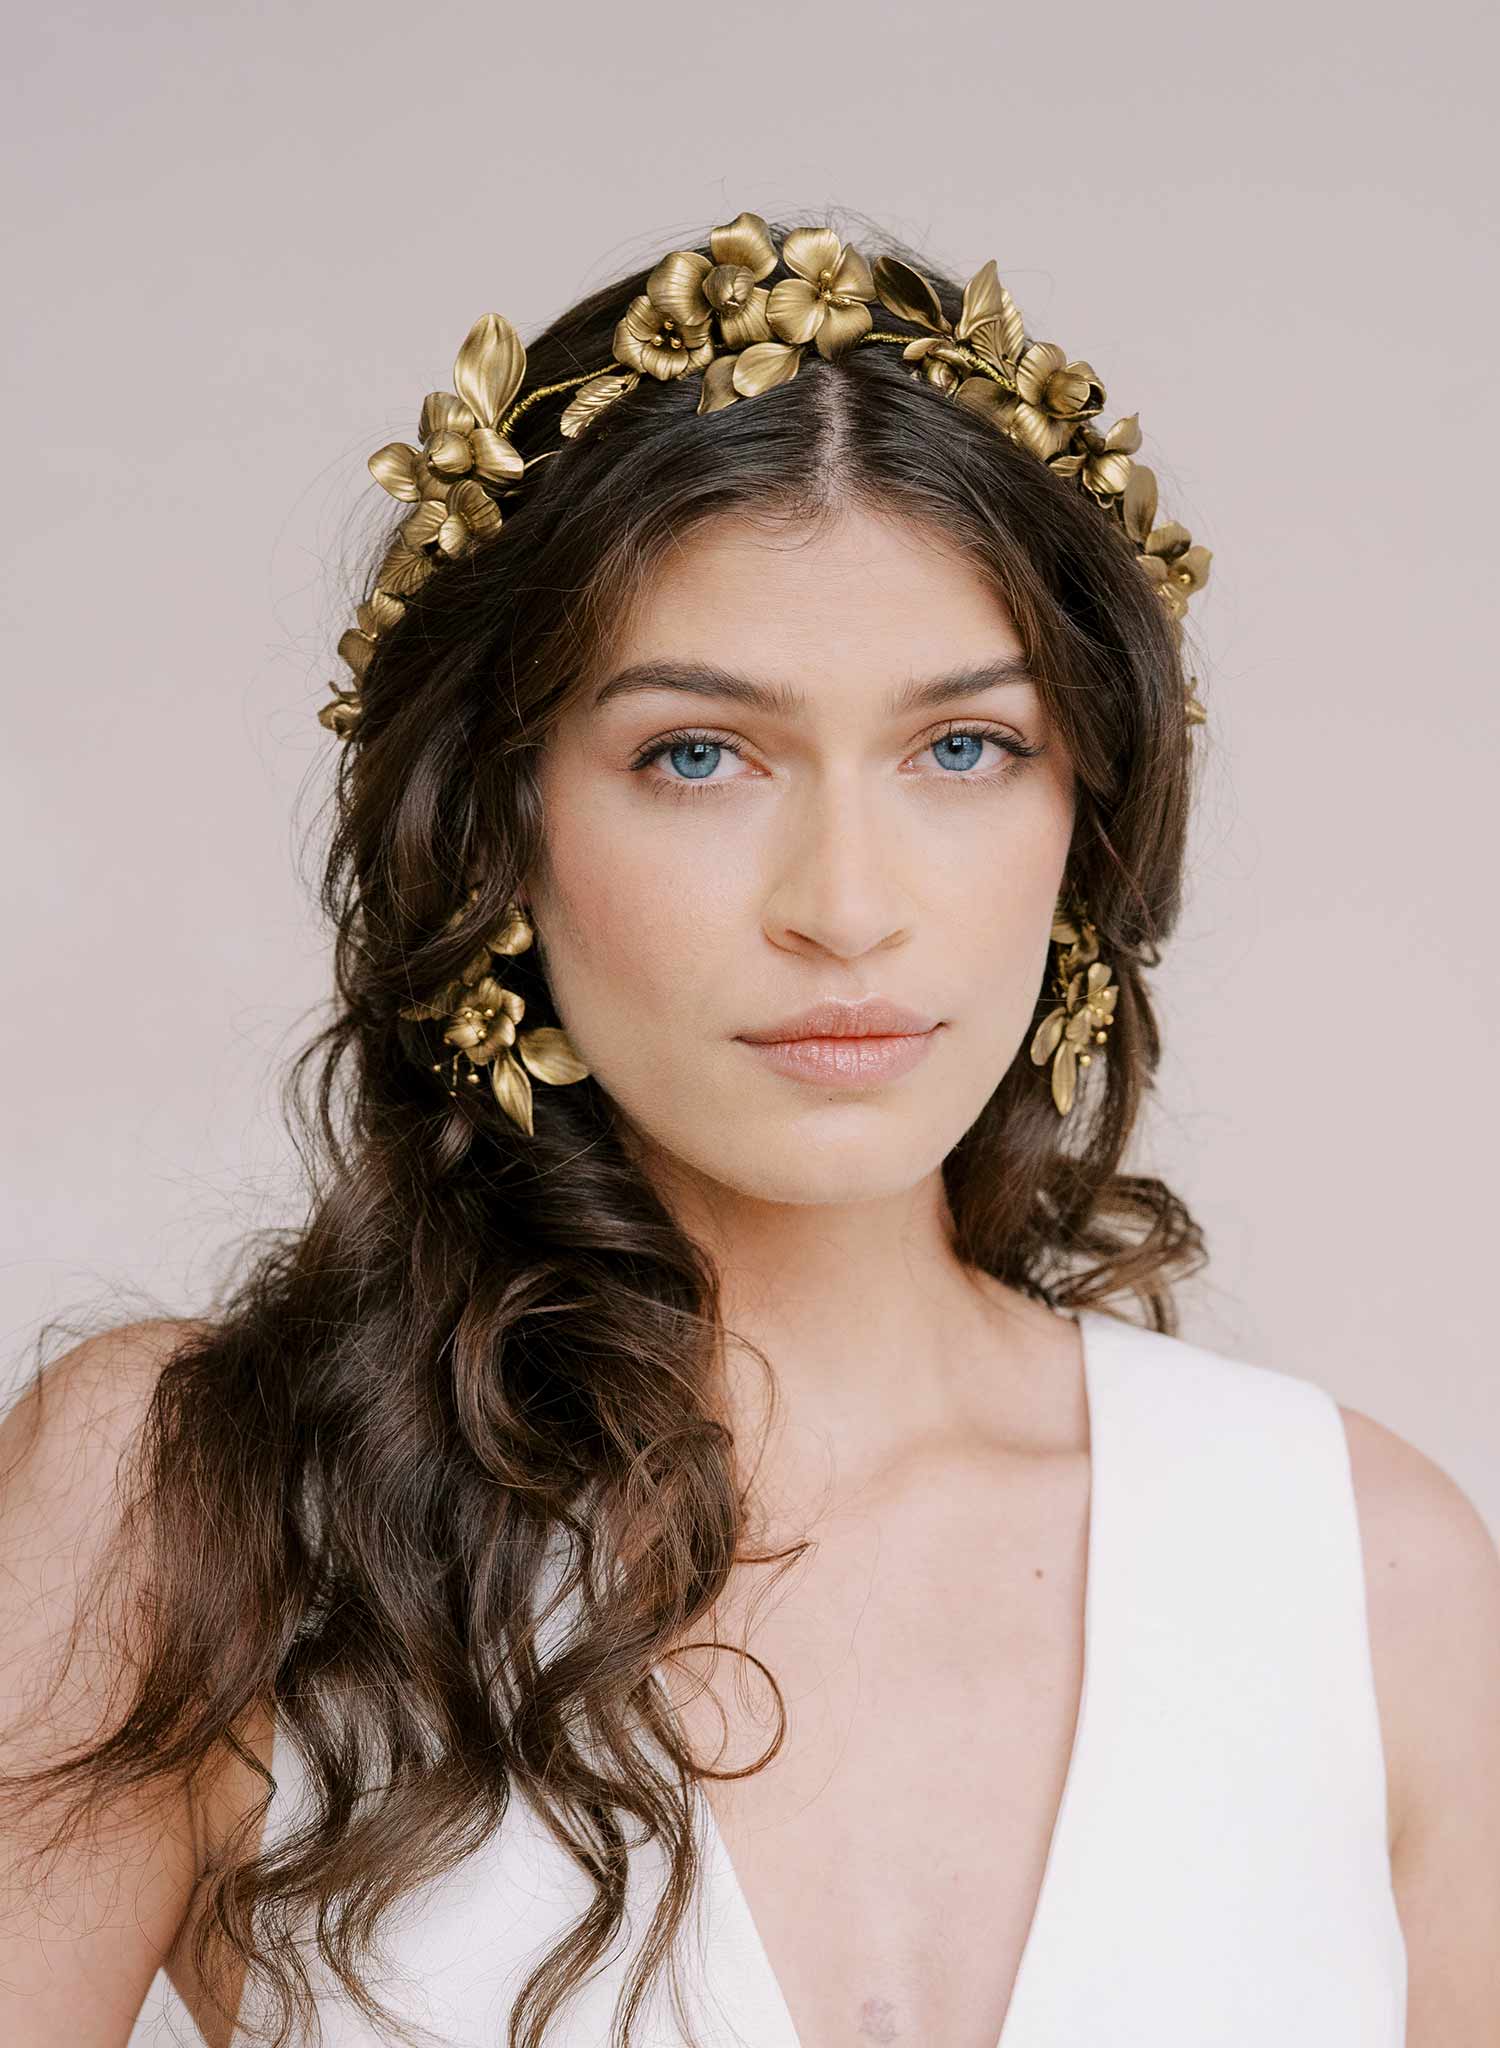 Bridal tiara, flower crown - Flourishing garden raised tiara